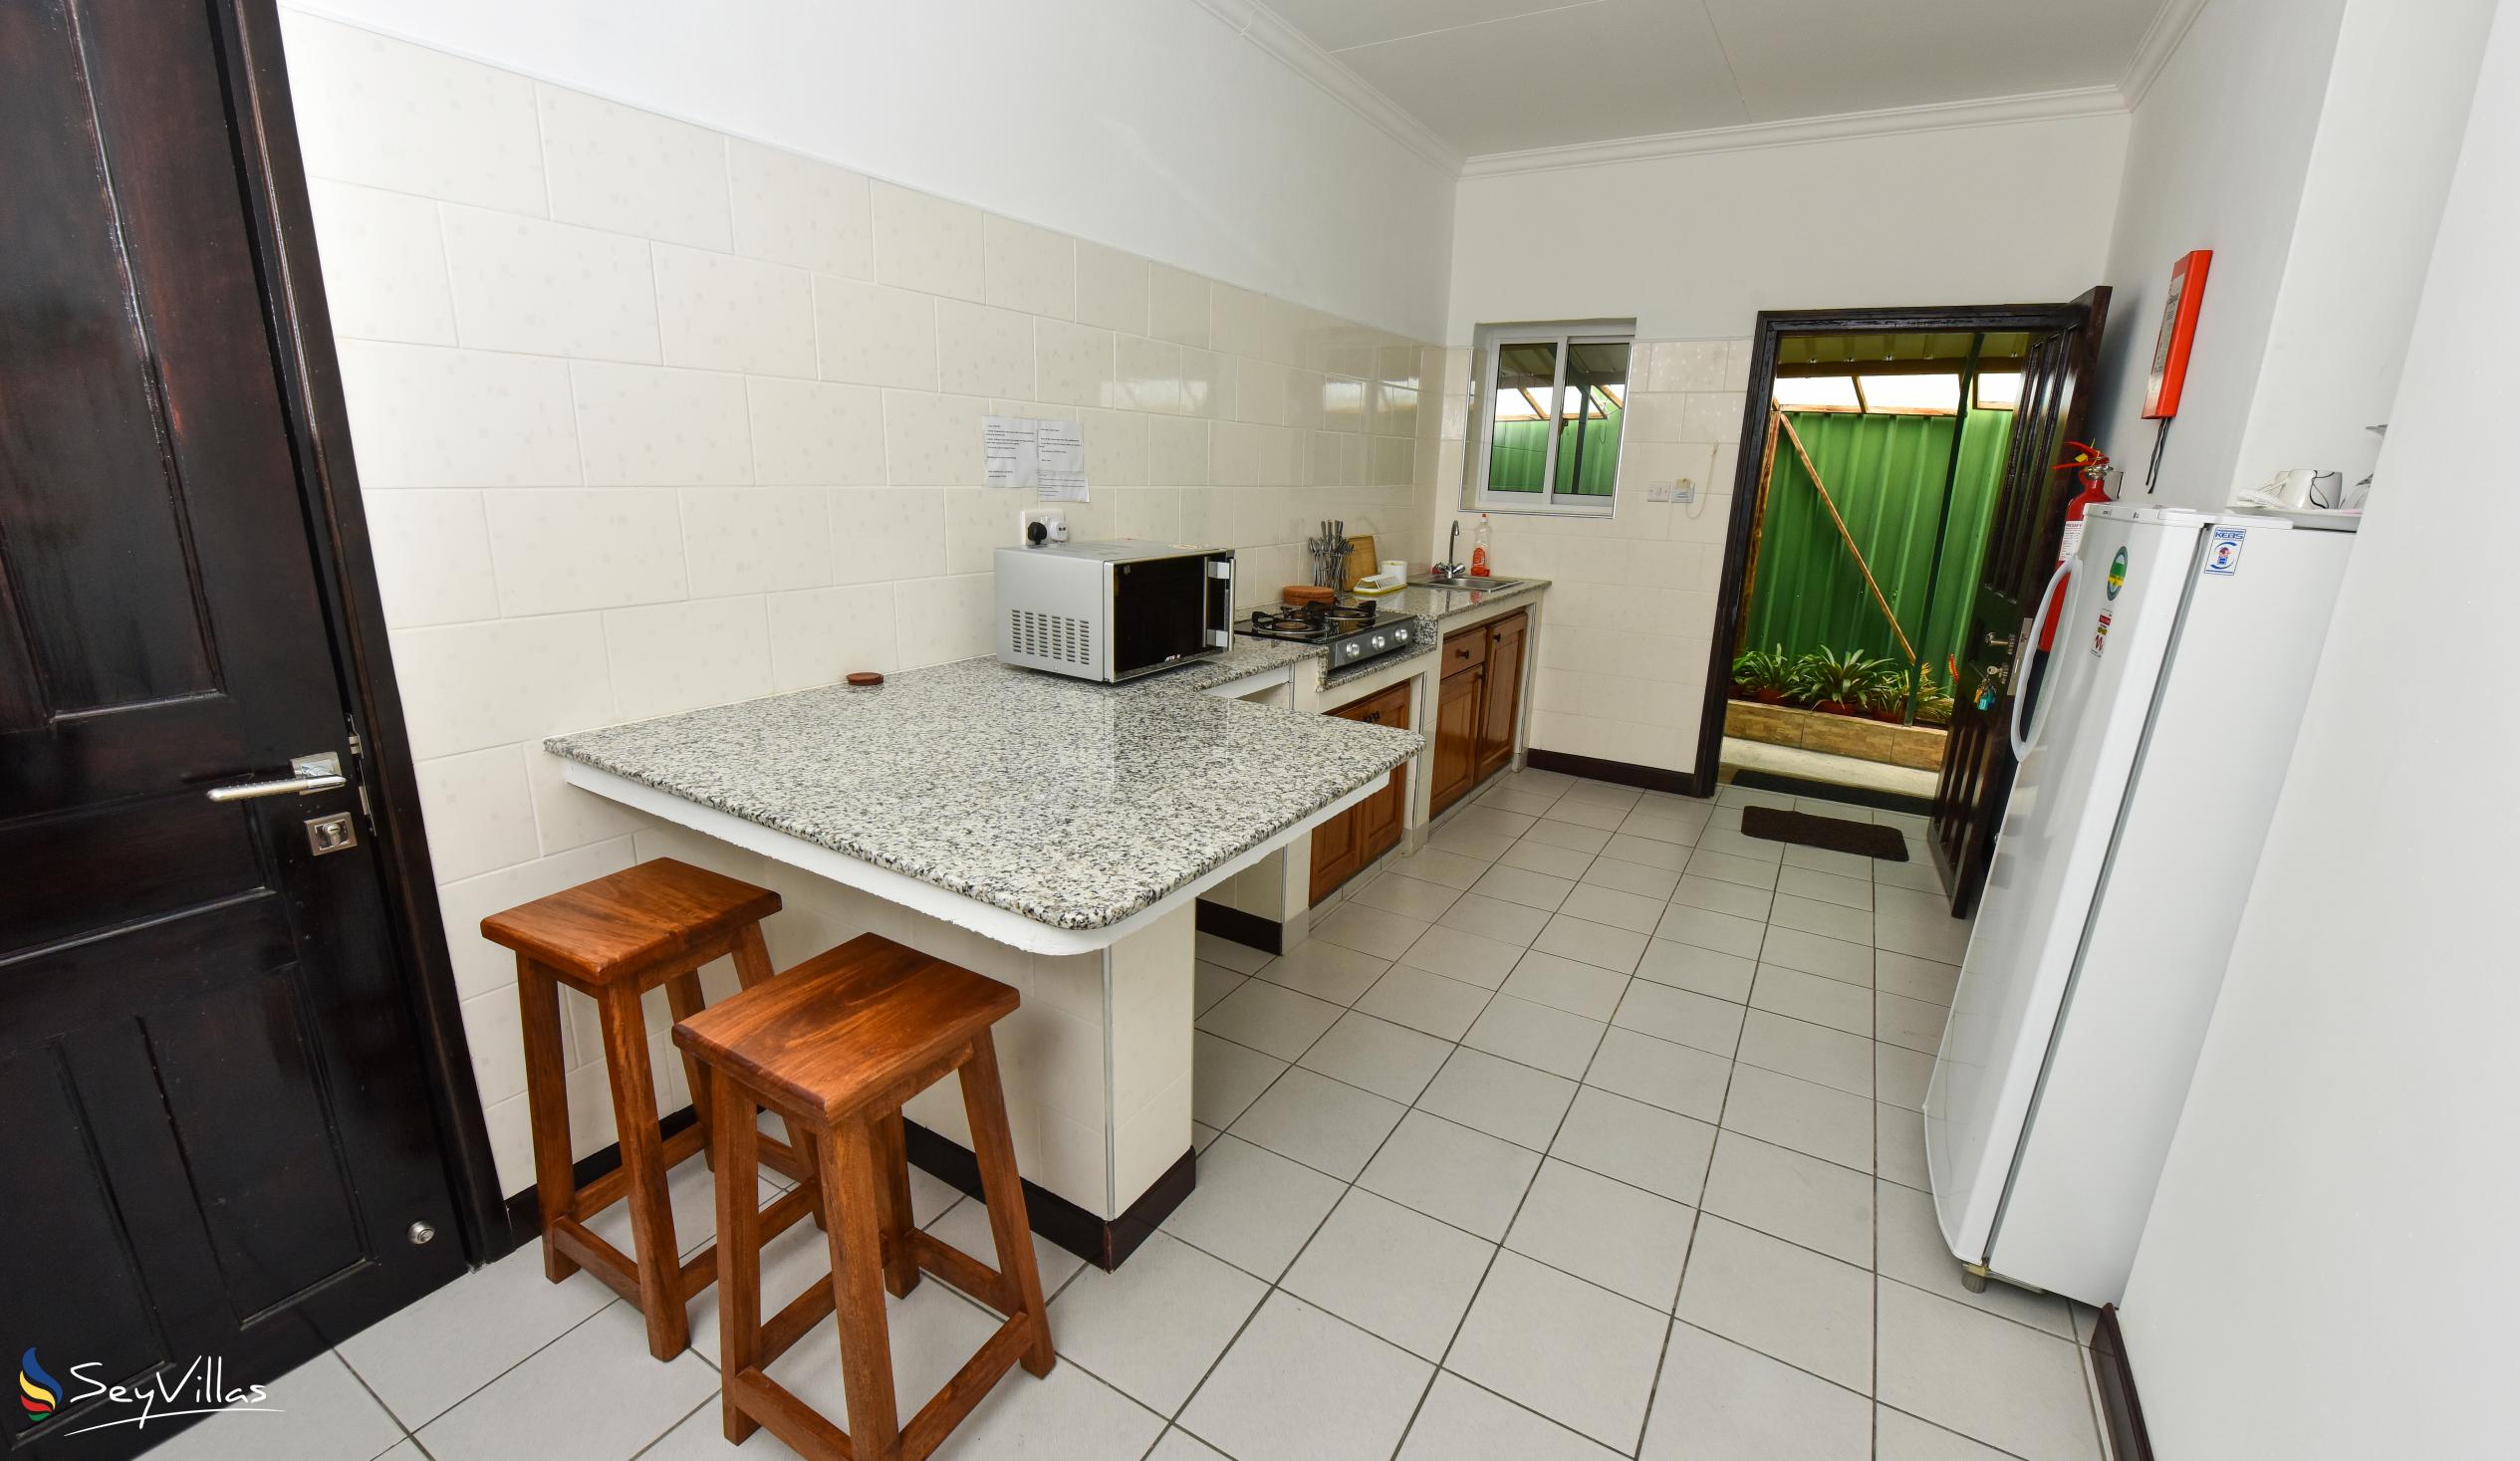 Foto 42: Anse Norwa Self Catering - Appartamento a pianterreno (Job) - Mahé (Seychelles)